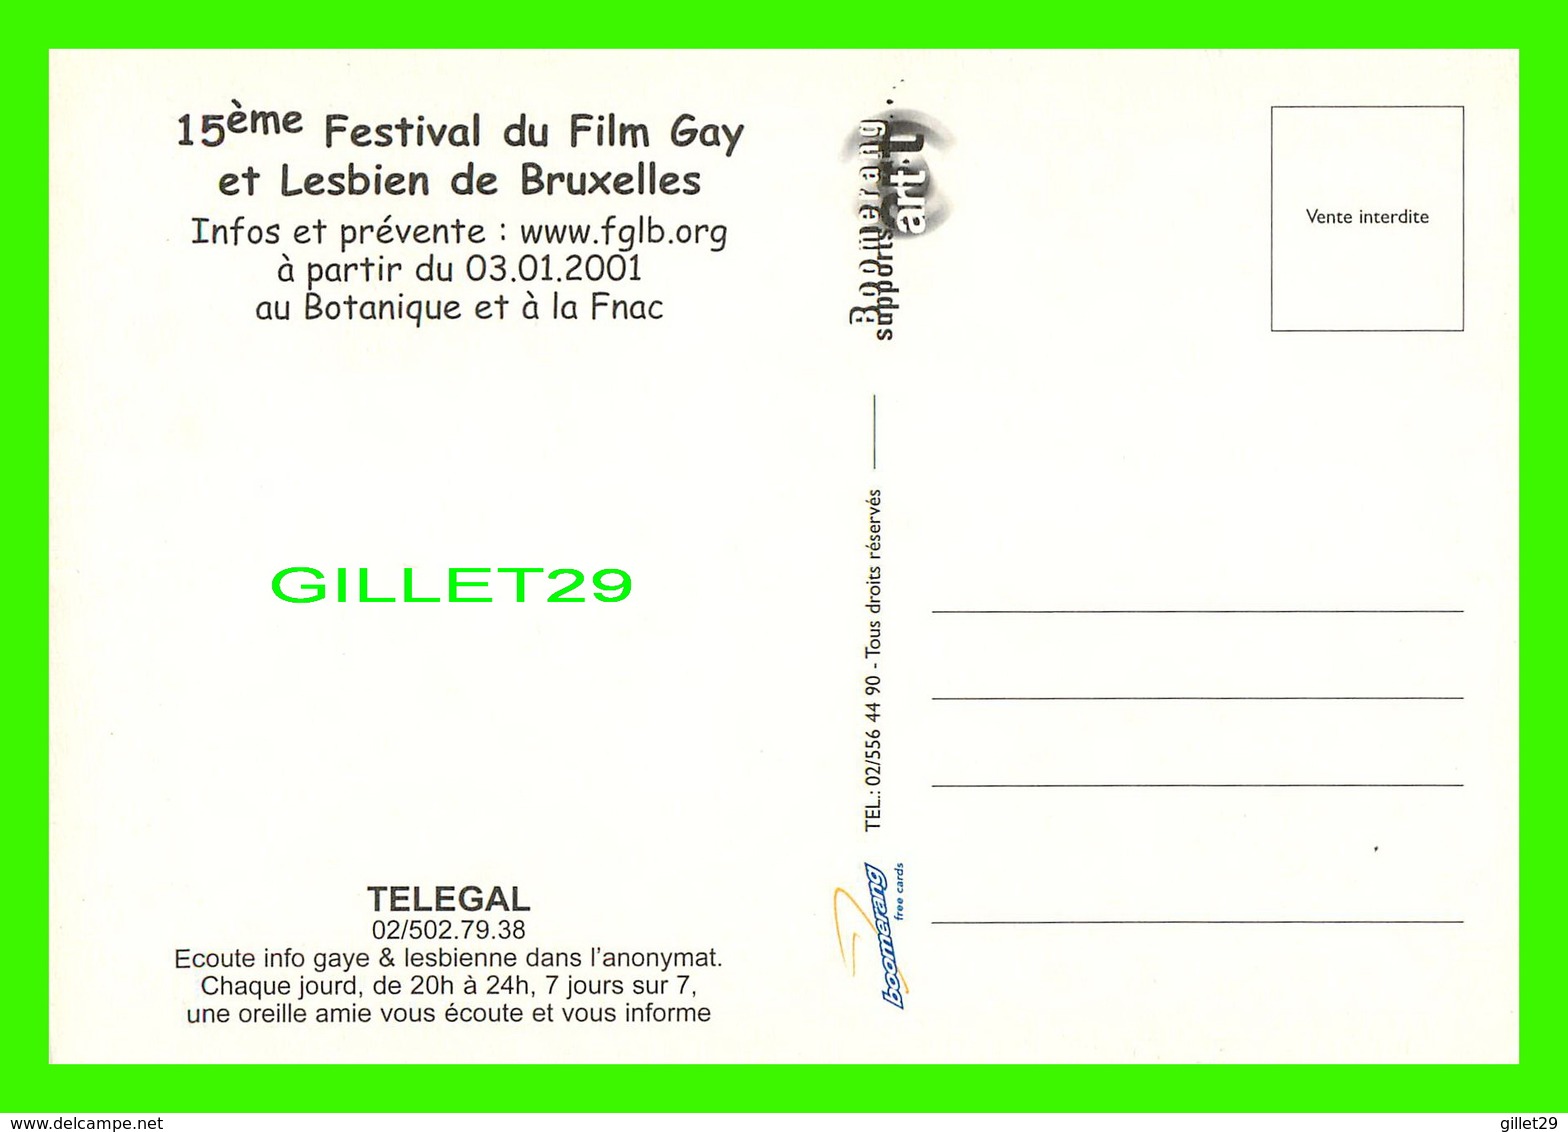 AFFICHES DE FILM - 15e FESTIVAL DU FILM GAY ET LESBIEN DE BRUXELLES, BELGIQUE EN 2001 - - Séries TV